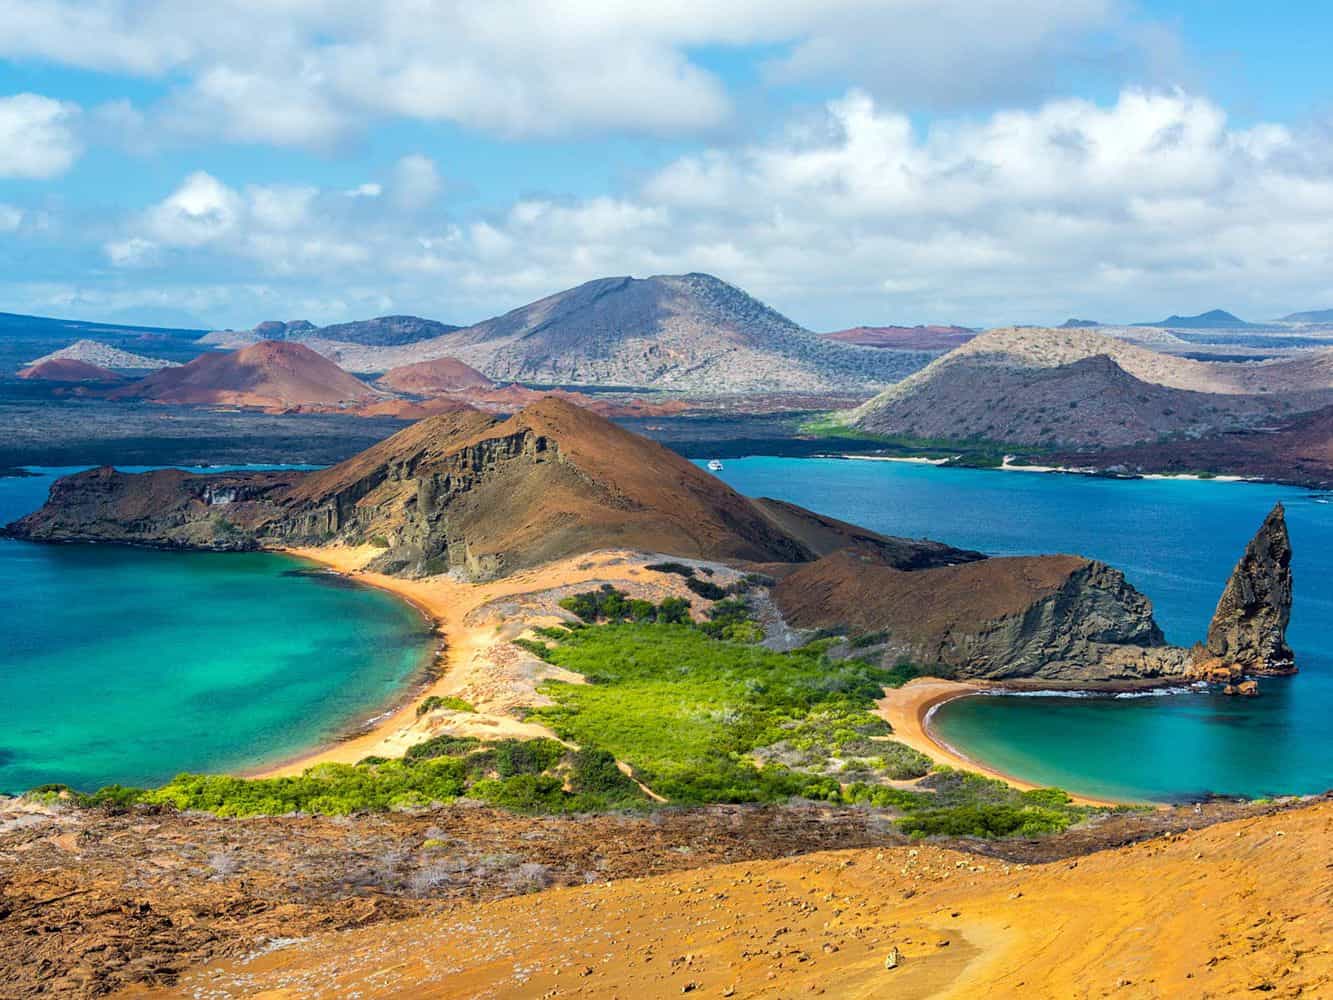 The Galapagos Islands, Ecuador